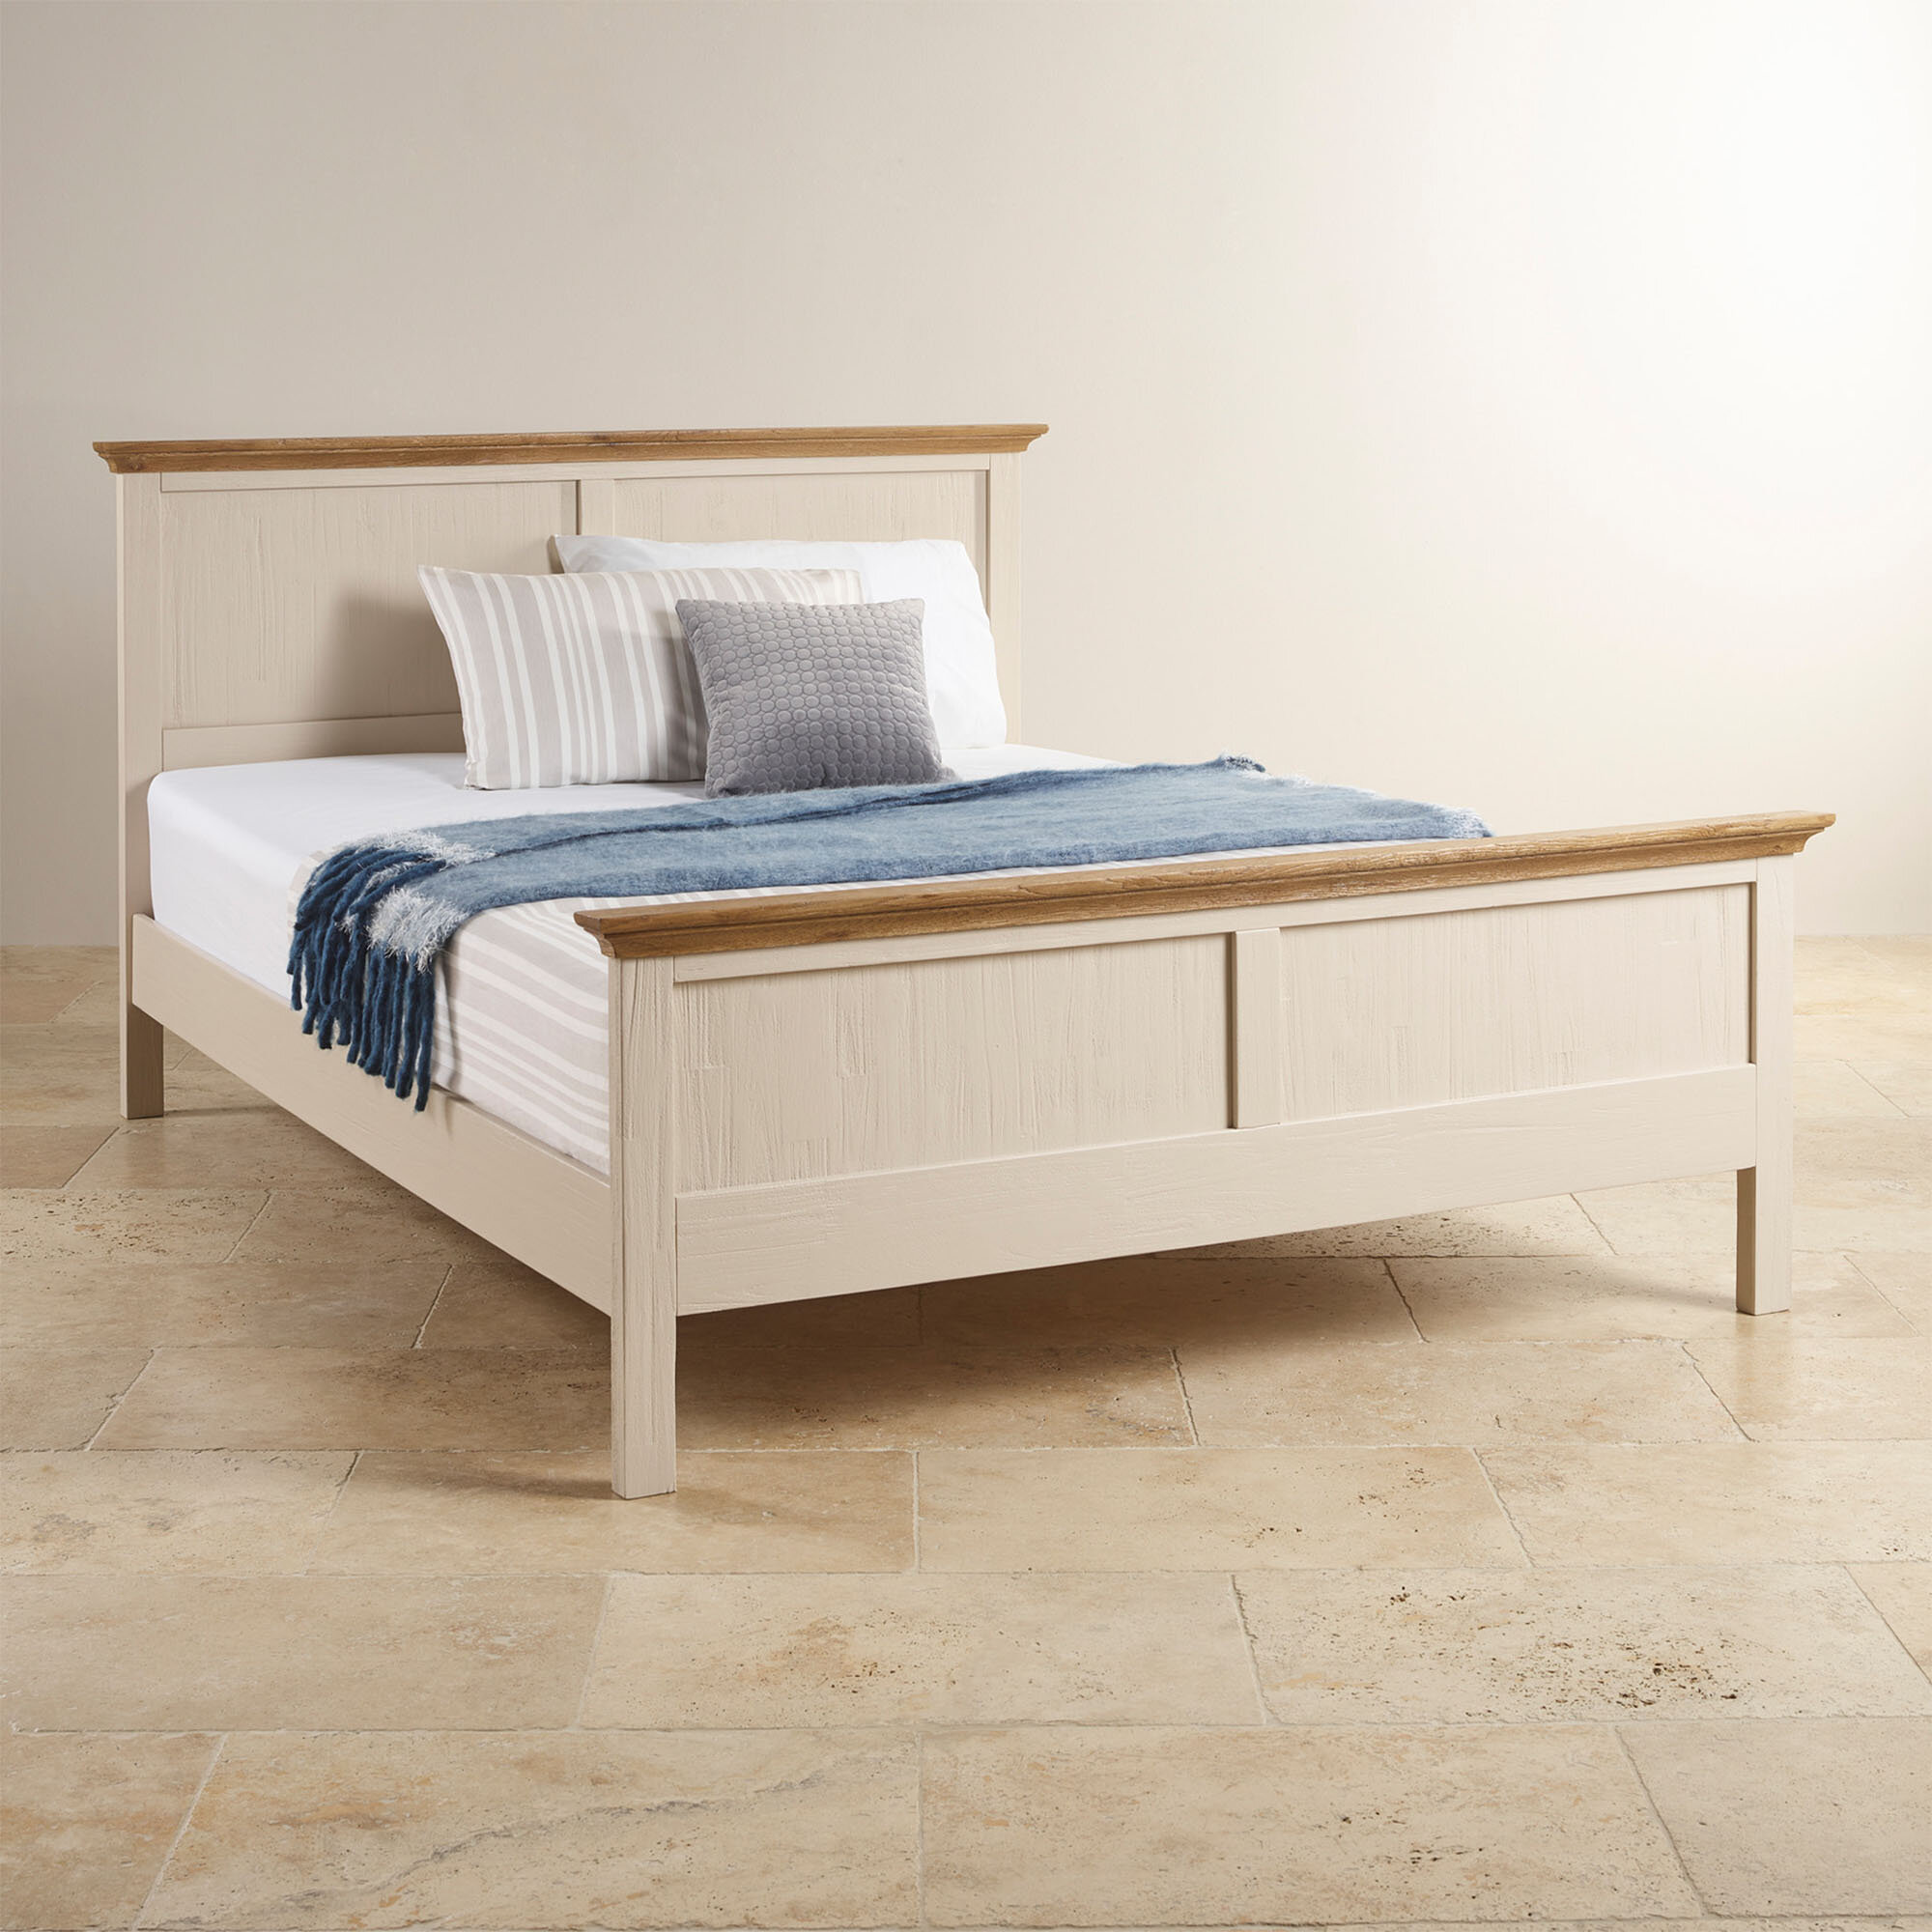 Giường đơn Cozino Sark gỗ sồi được đánh giá cao nhờ sự chắc chắn và thẩm mỹ khi gia công